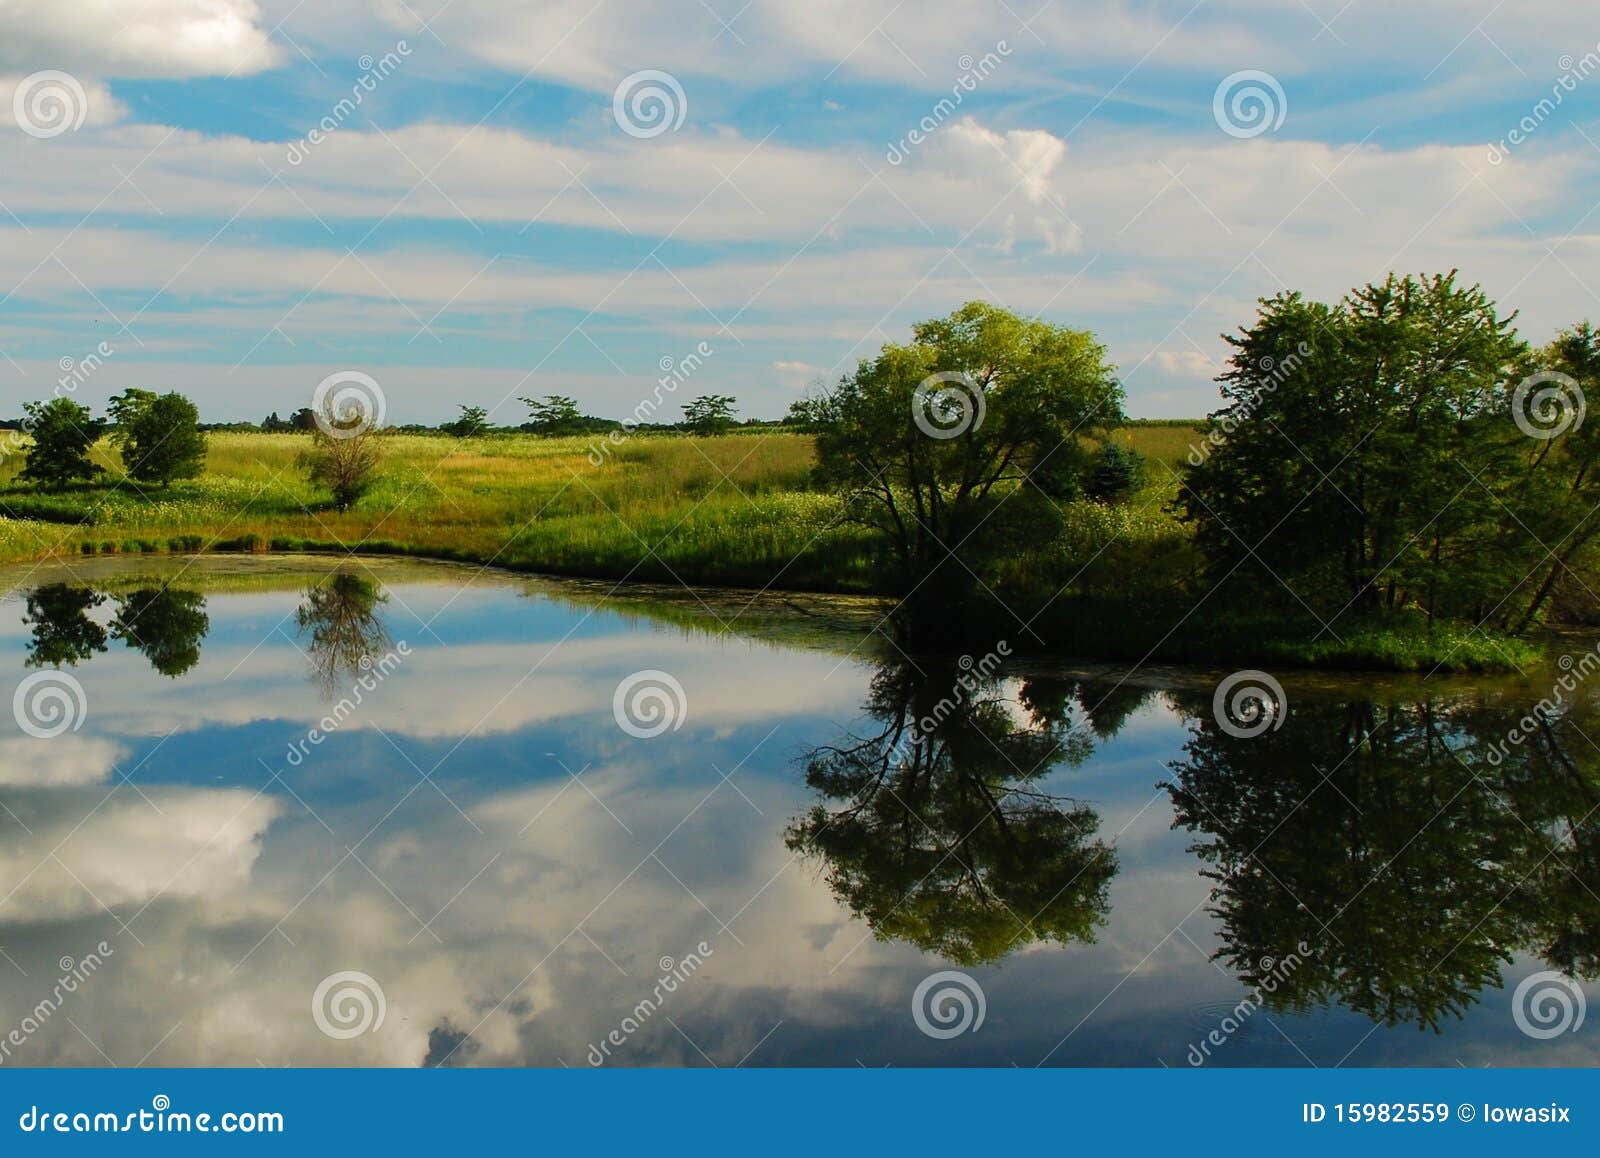 reflections on an iowa farm pond